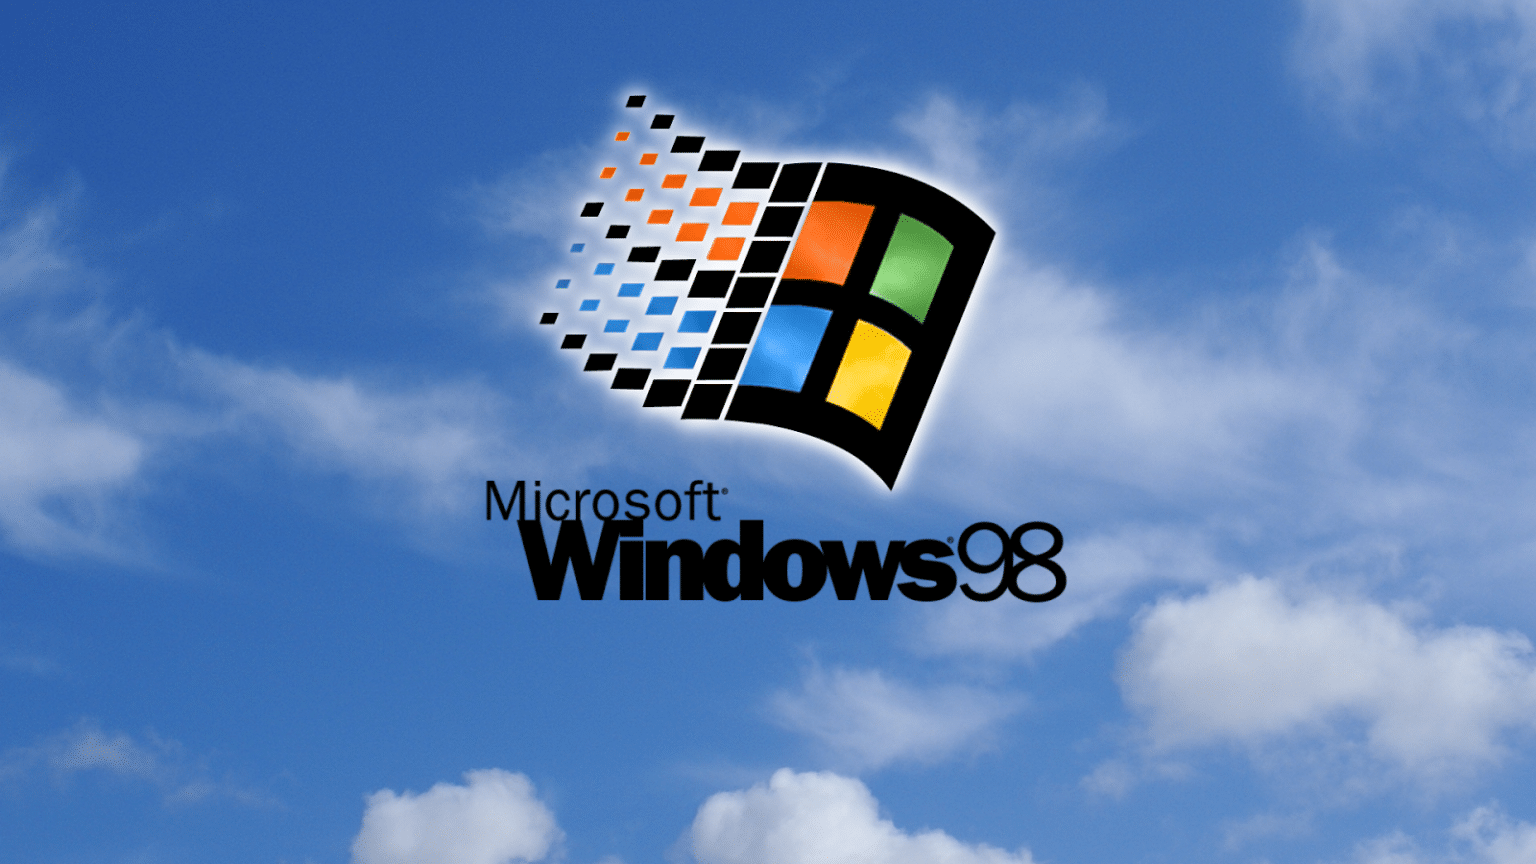 Windows 95 1995